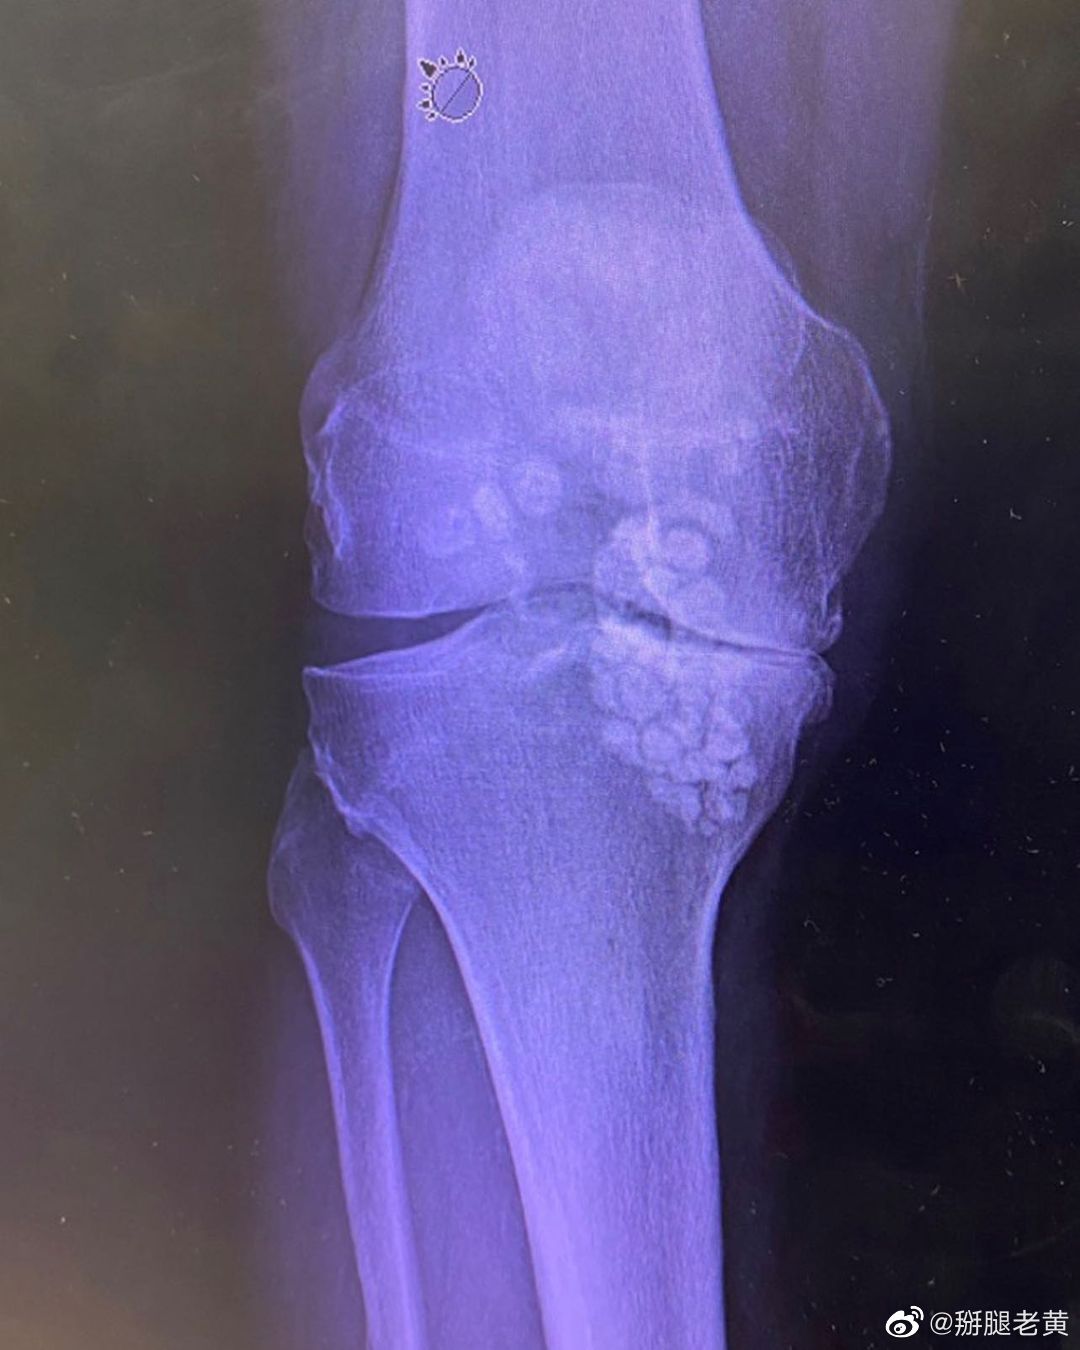 膝关节滑膜软骨瘤病,需要手术取出,同时配合滑膜切除